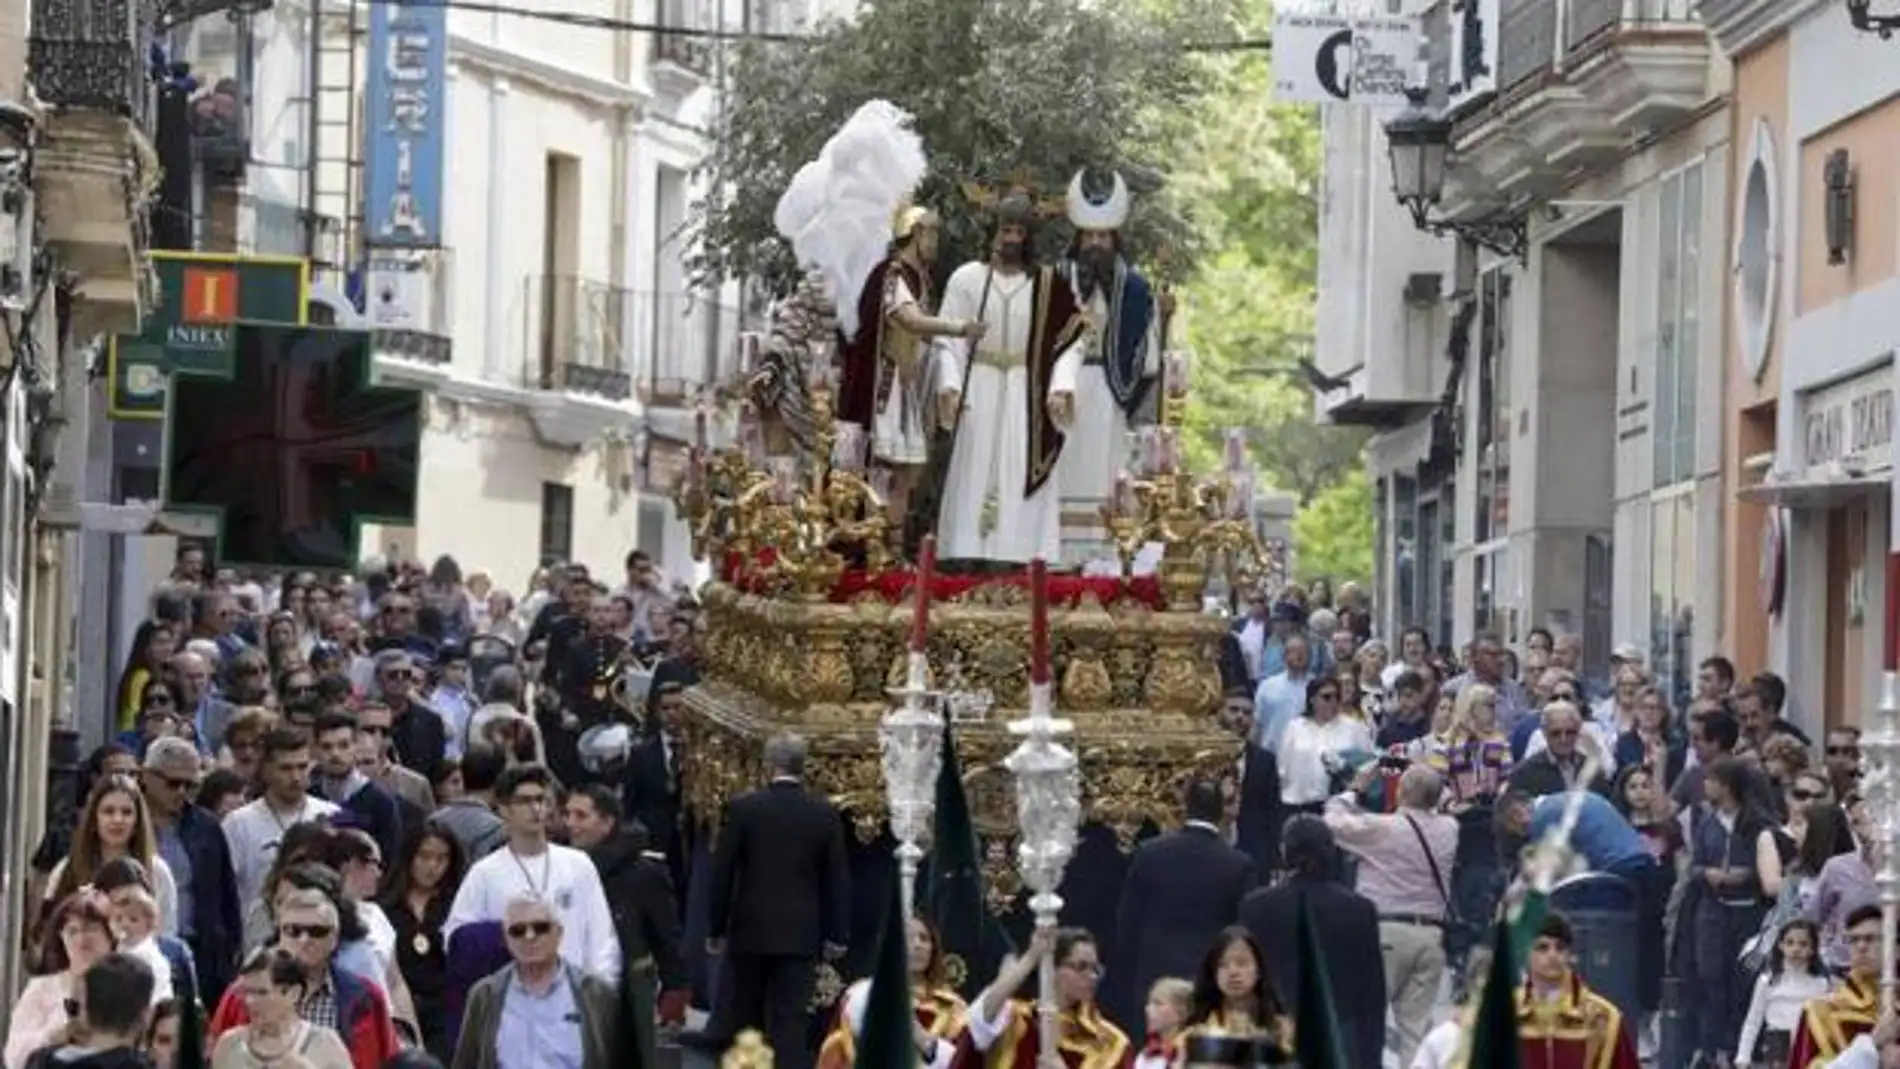 Las procesiones regresan a Extremadura tras la pandemia